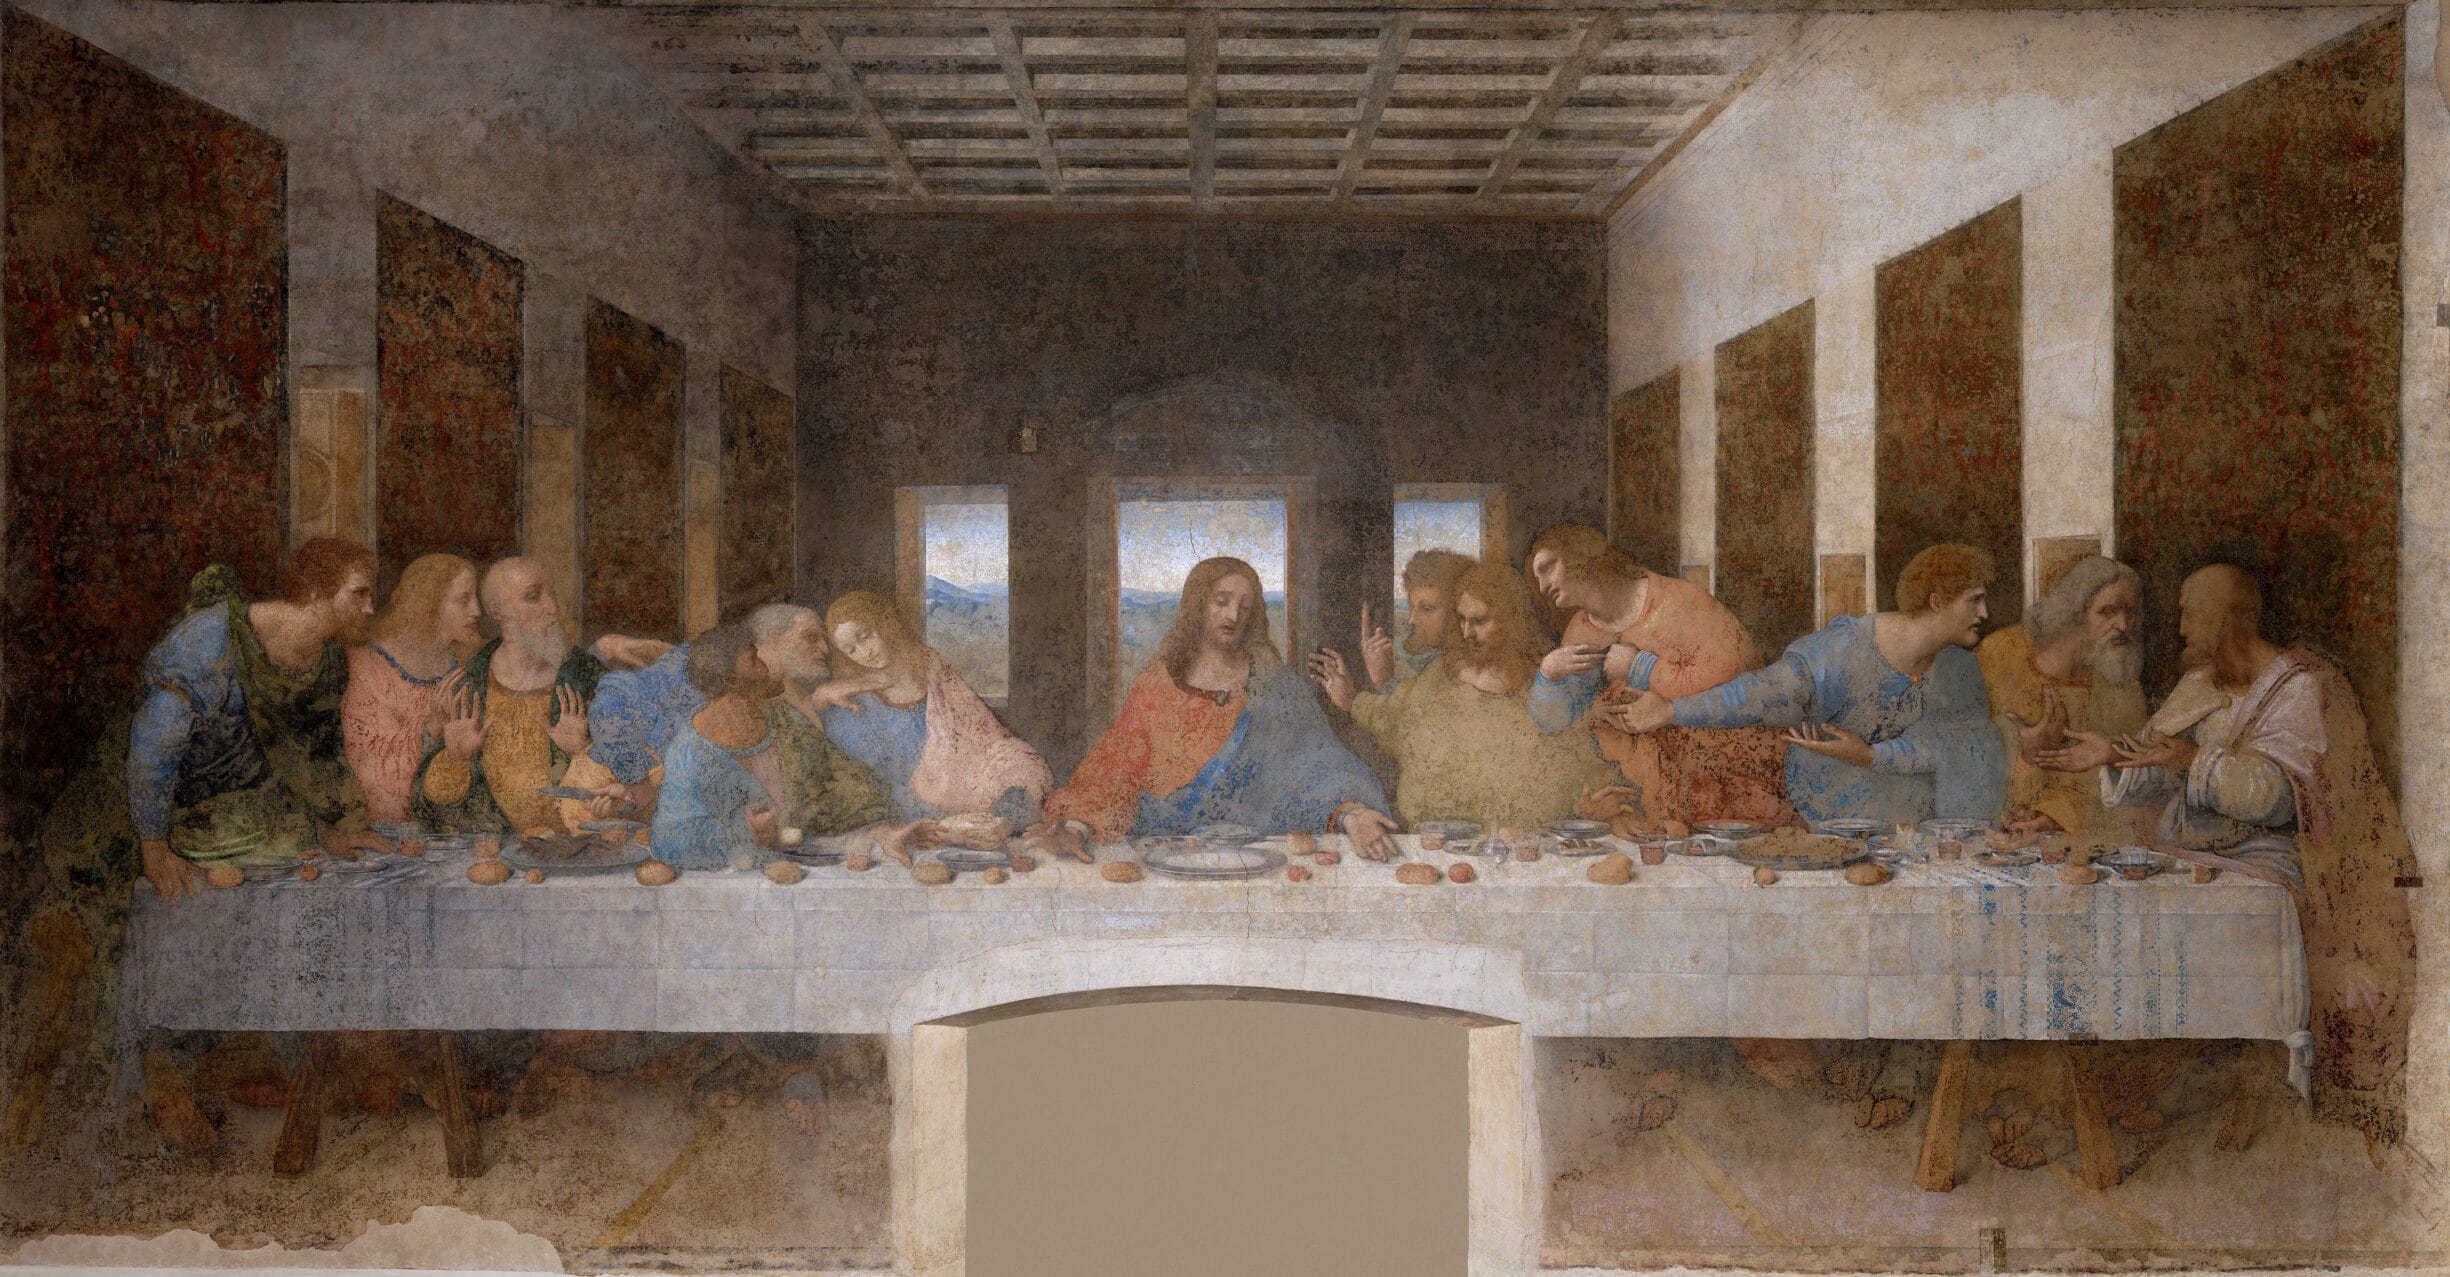 Leonardo_da_Vinci_(1452-1519)_-_The Last Supper. Tempera on gesso, pitch and mastic, painted from 1495 until 1498 by Leonardo da Vinci (1452–1519). Collection: Santa Maria delle Grazie, Milan, Italy. Source/Photographer: Unknown. Public Domain.